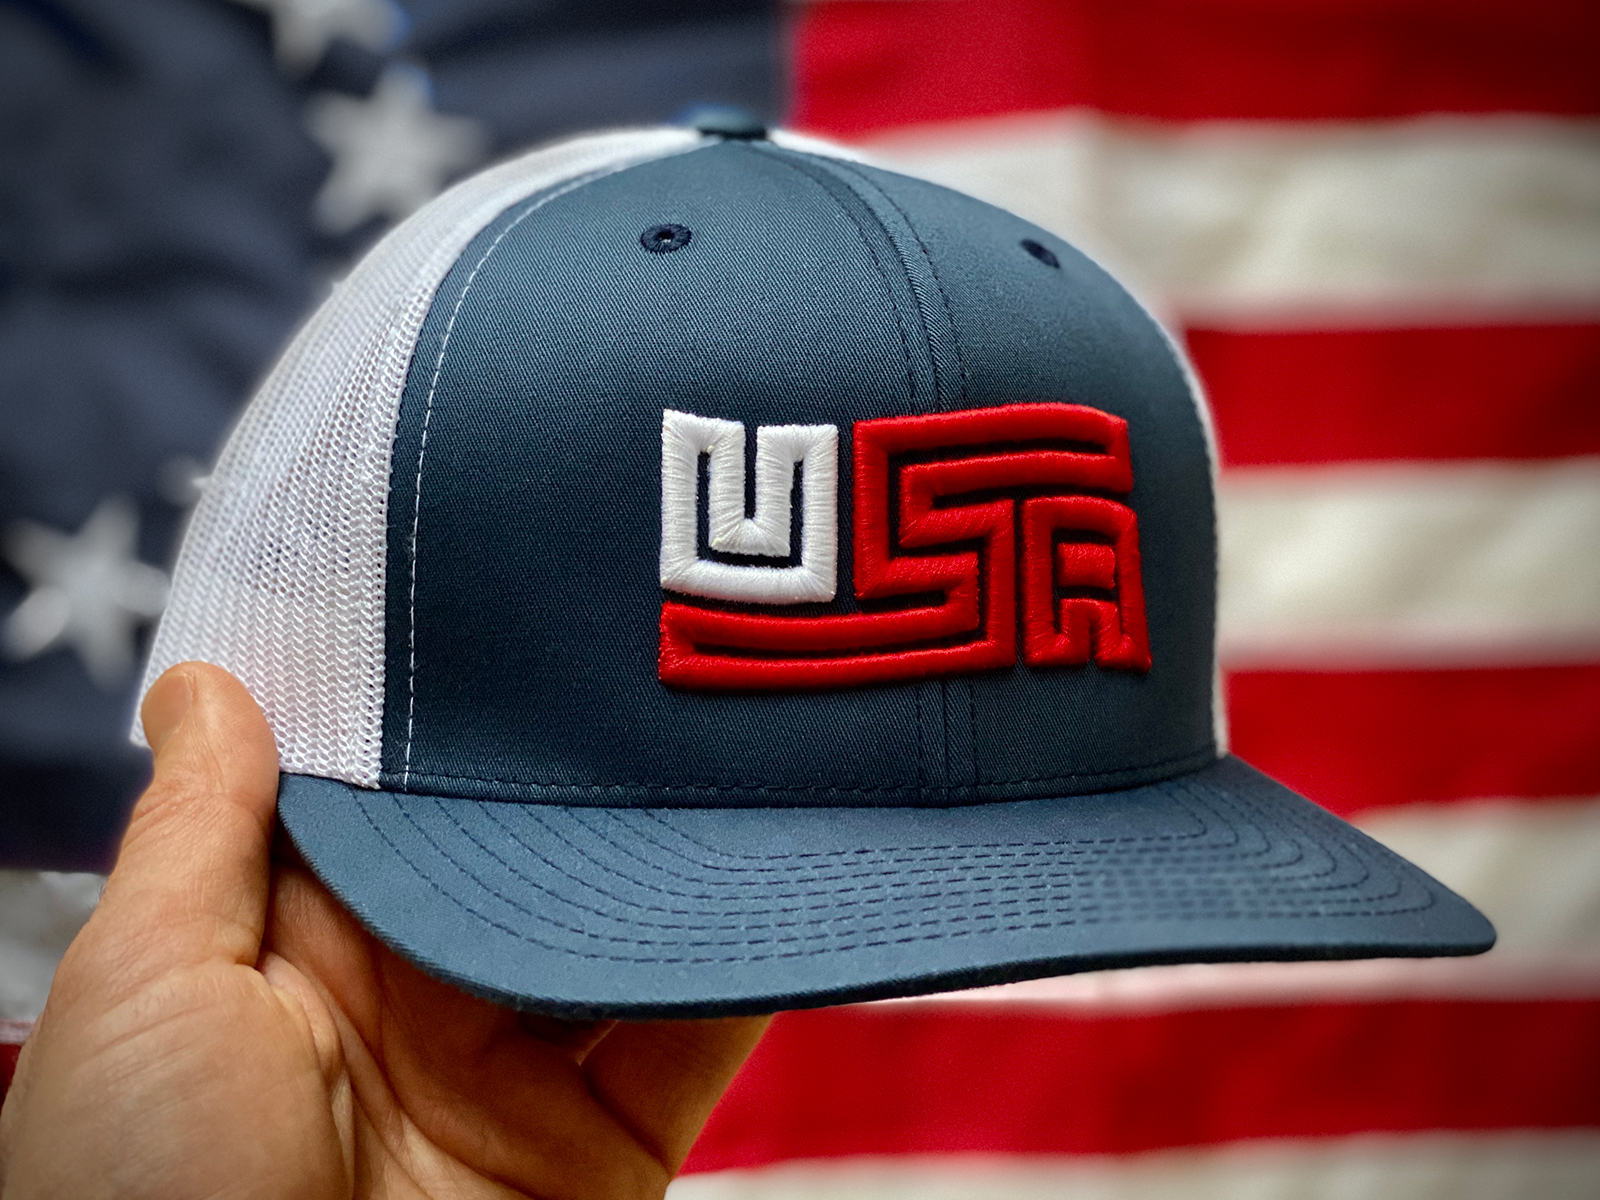 Sale > latest cap design > in stock